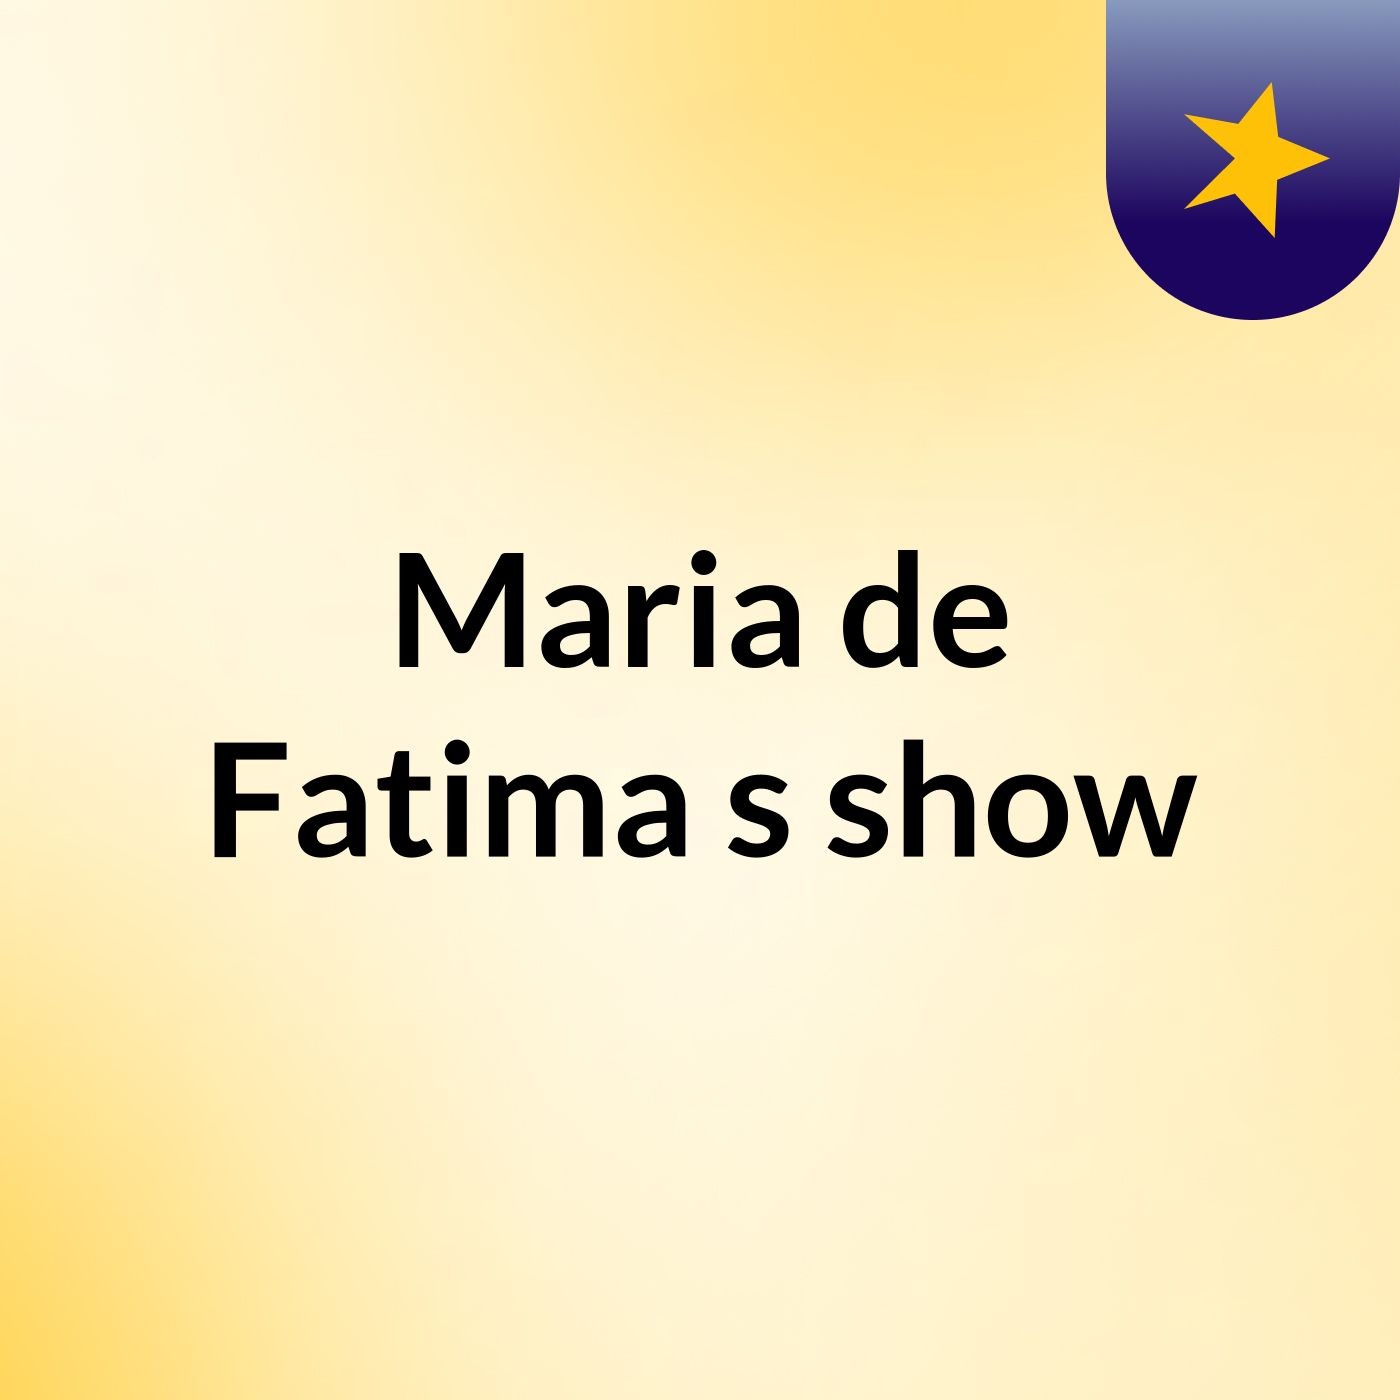 Maria de Fatima's show